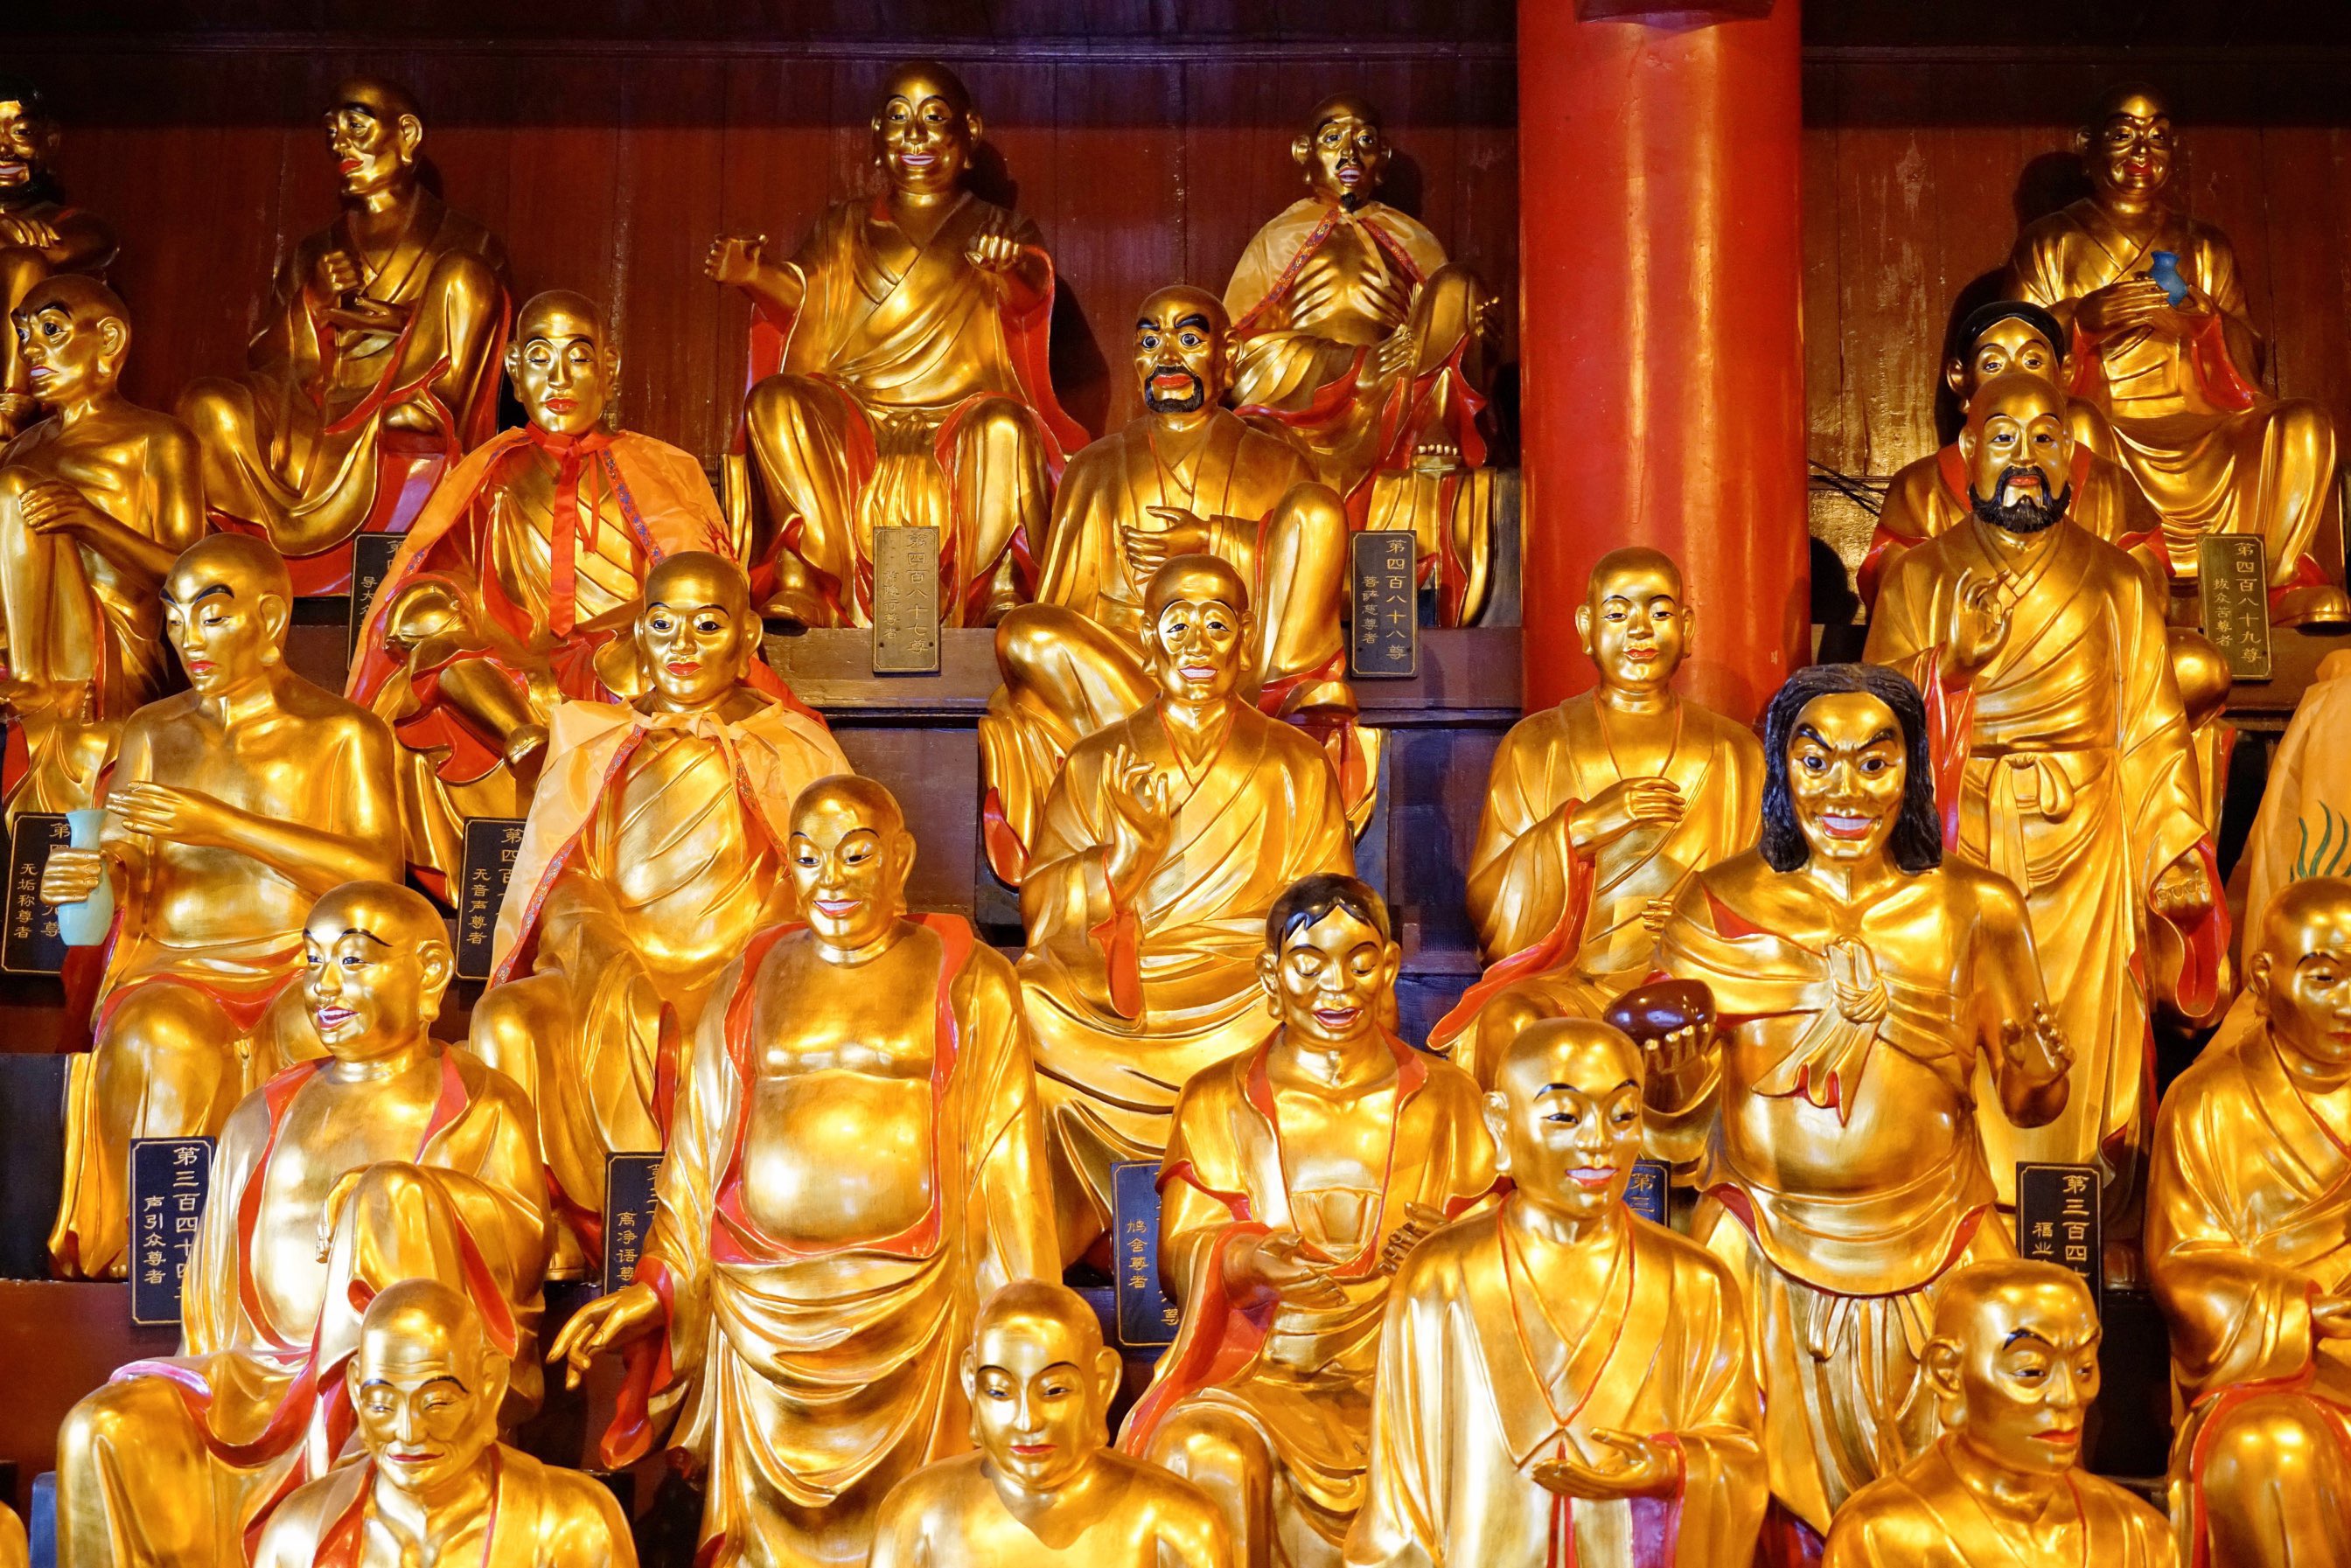 【携程攻略】九华山百岁宫景点,所谓五百罗汉是指跟随佛祖听法传道的